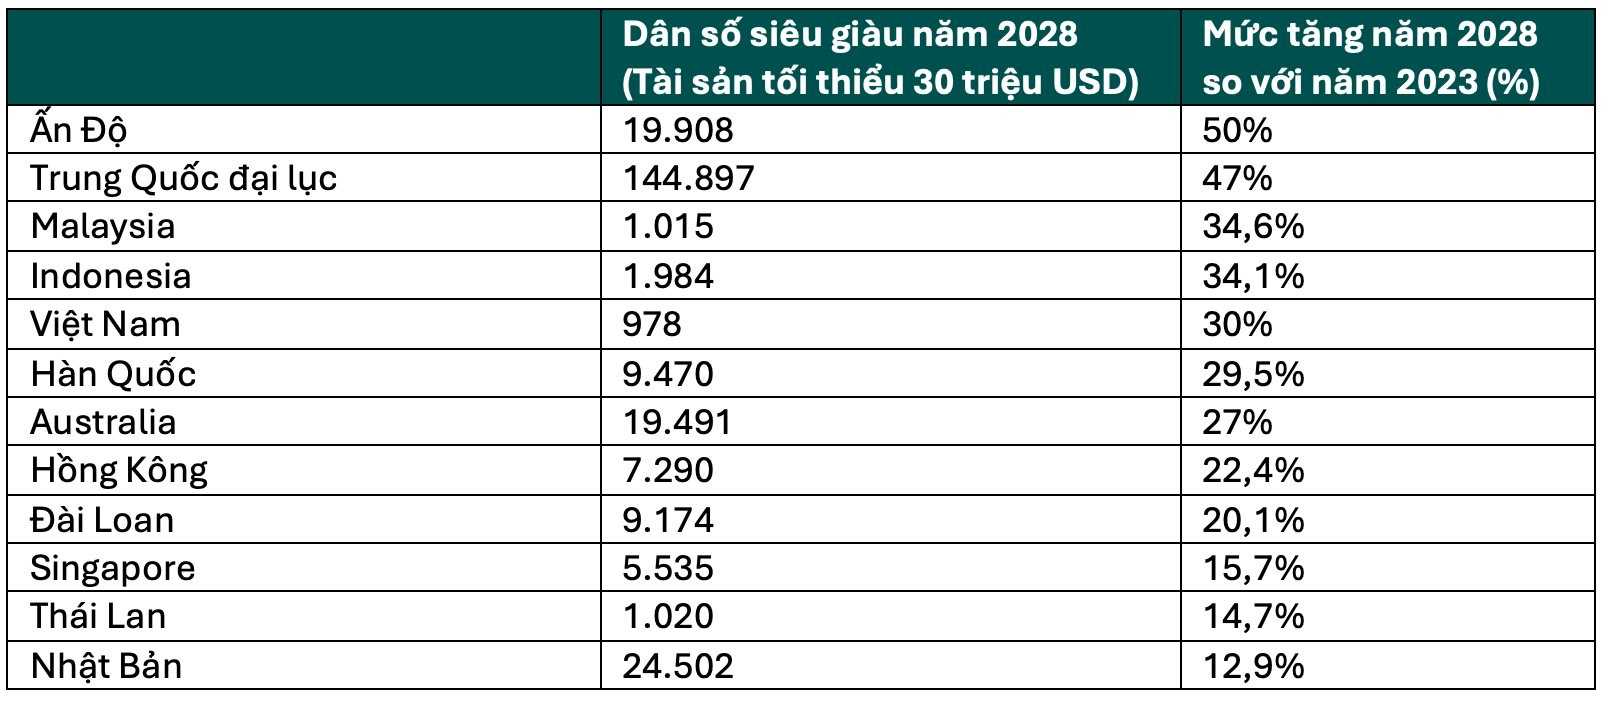 Việt Nam lọt top 5 châu Á-Thái Bình Dương về mức tăng dân số siêu giàu, vượt cả Hàn Quốc, Hồng Kông và Singapore - ảnh 1